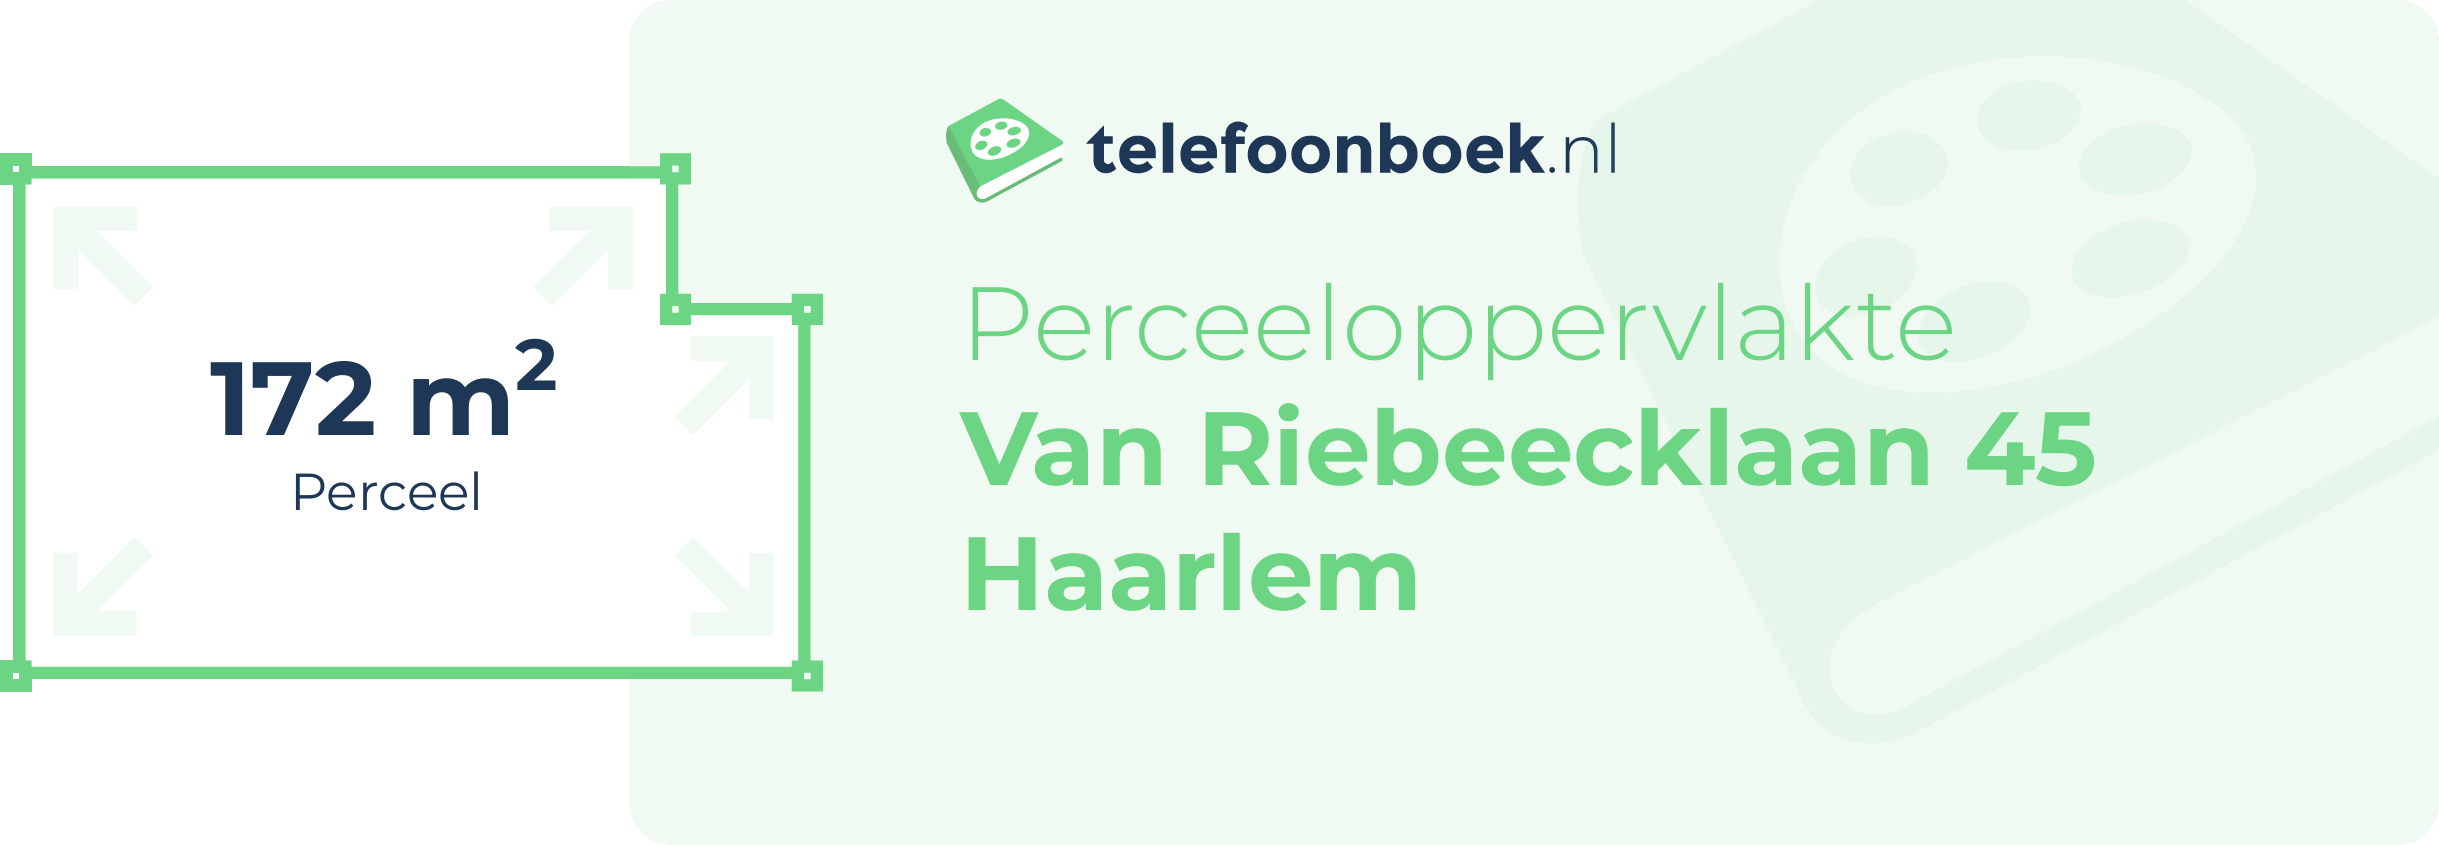 Perceeloppervlakte Van Riebeecklaan 45 Haarlem